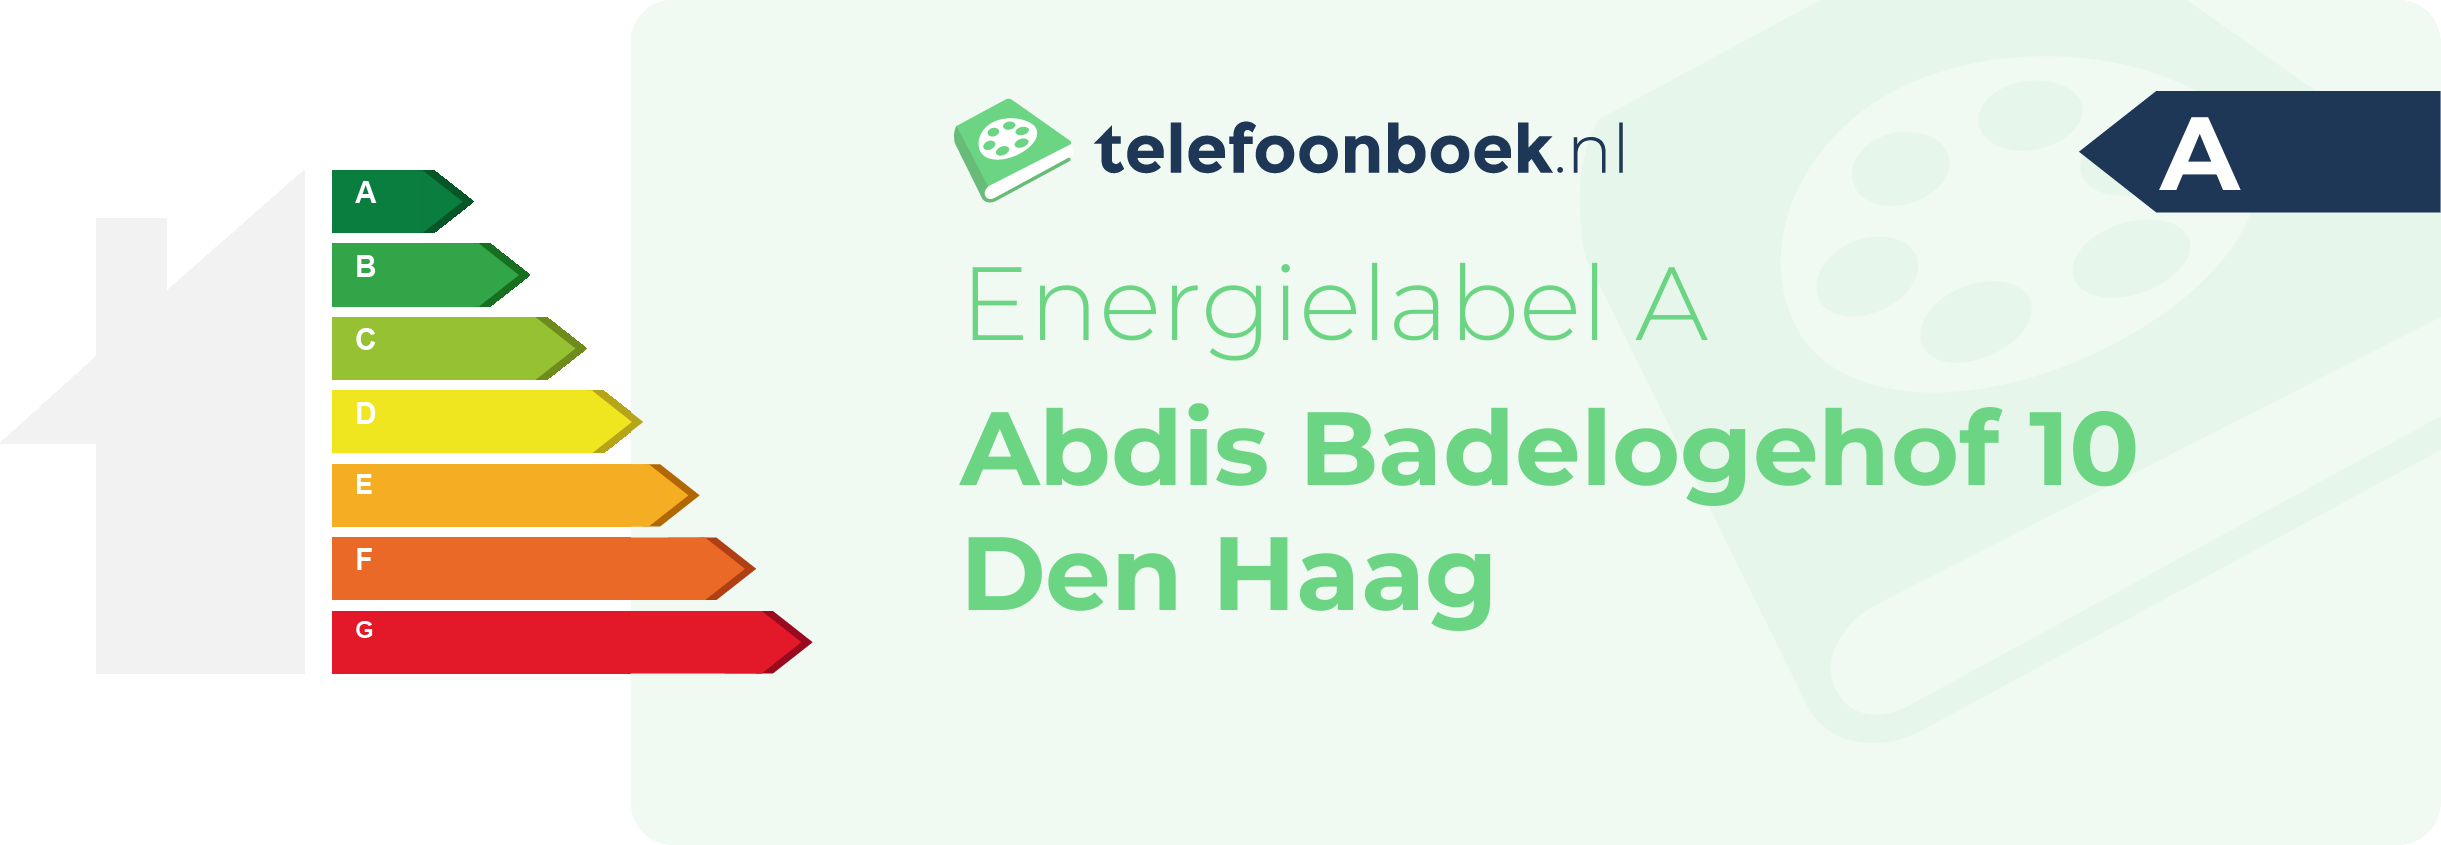 Energielabel Abdis Badelogehof 10 Den Haag